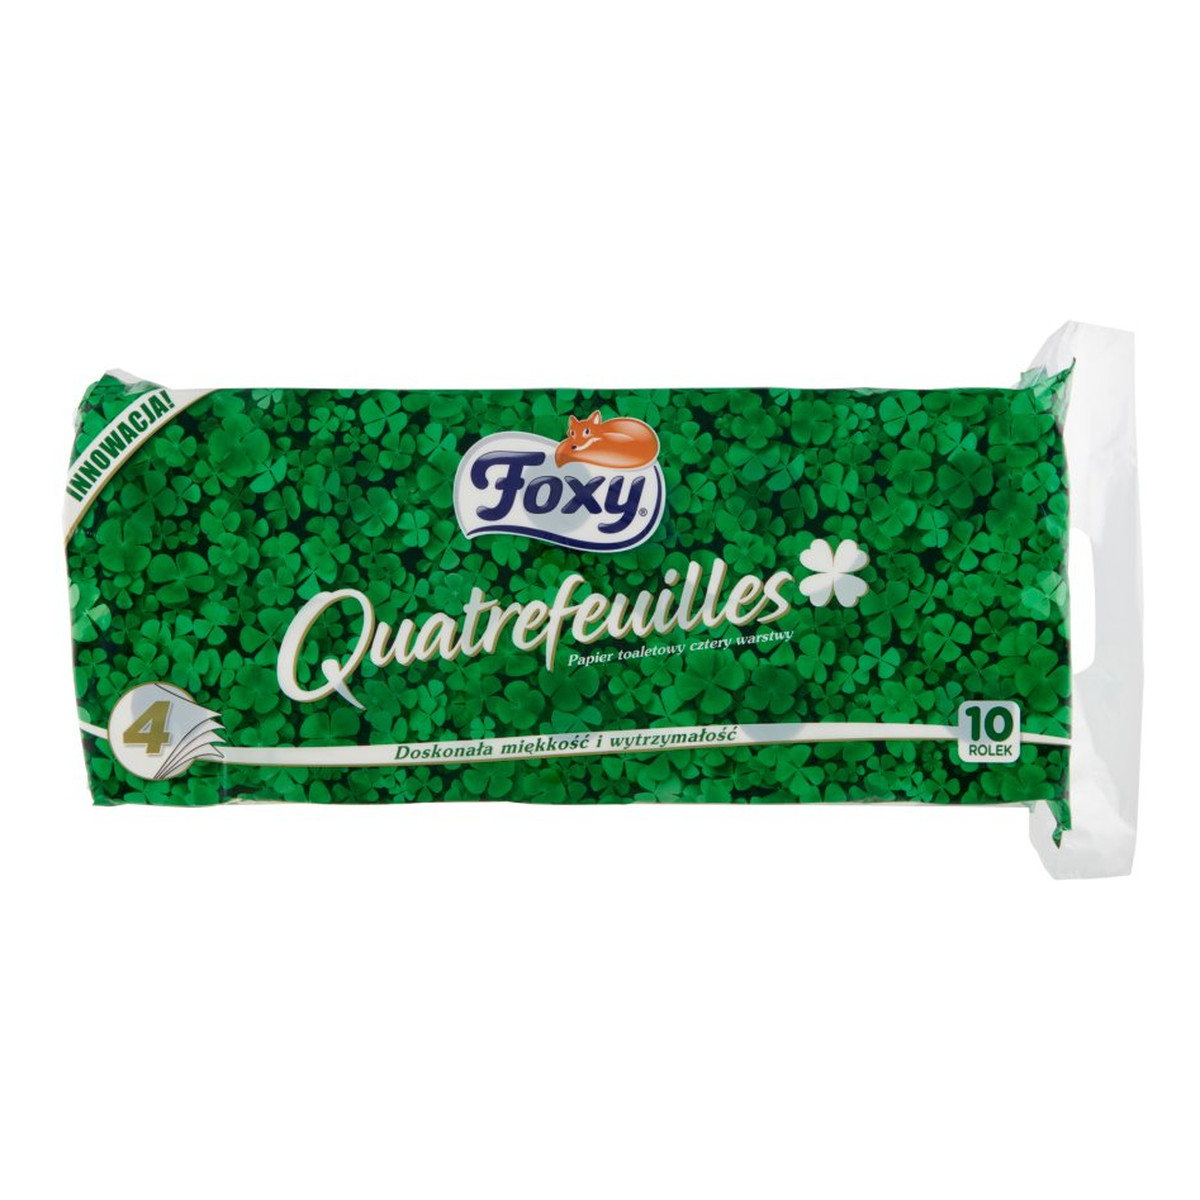 Foxy Quatrefeuilles Papier toaletowy cztery warstwy 10 rolek